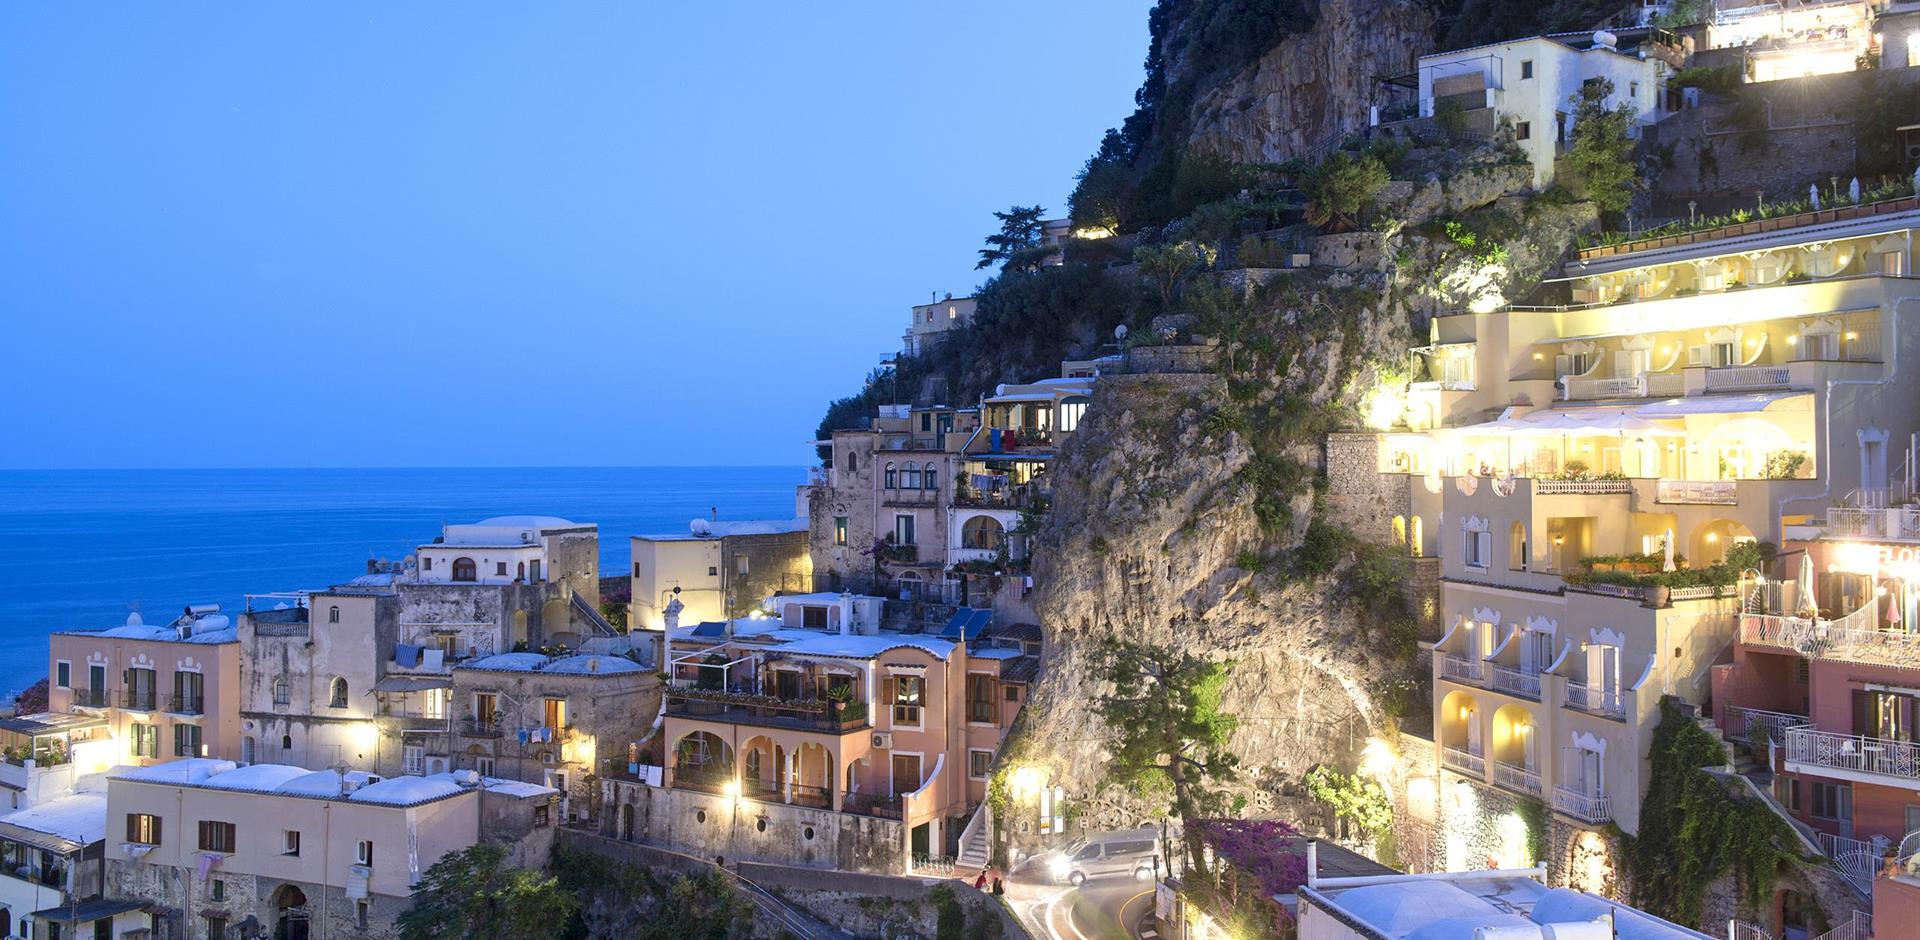 Amalfi & Positano, Italy